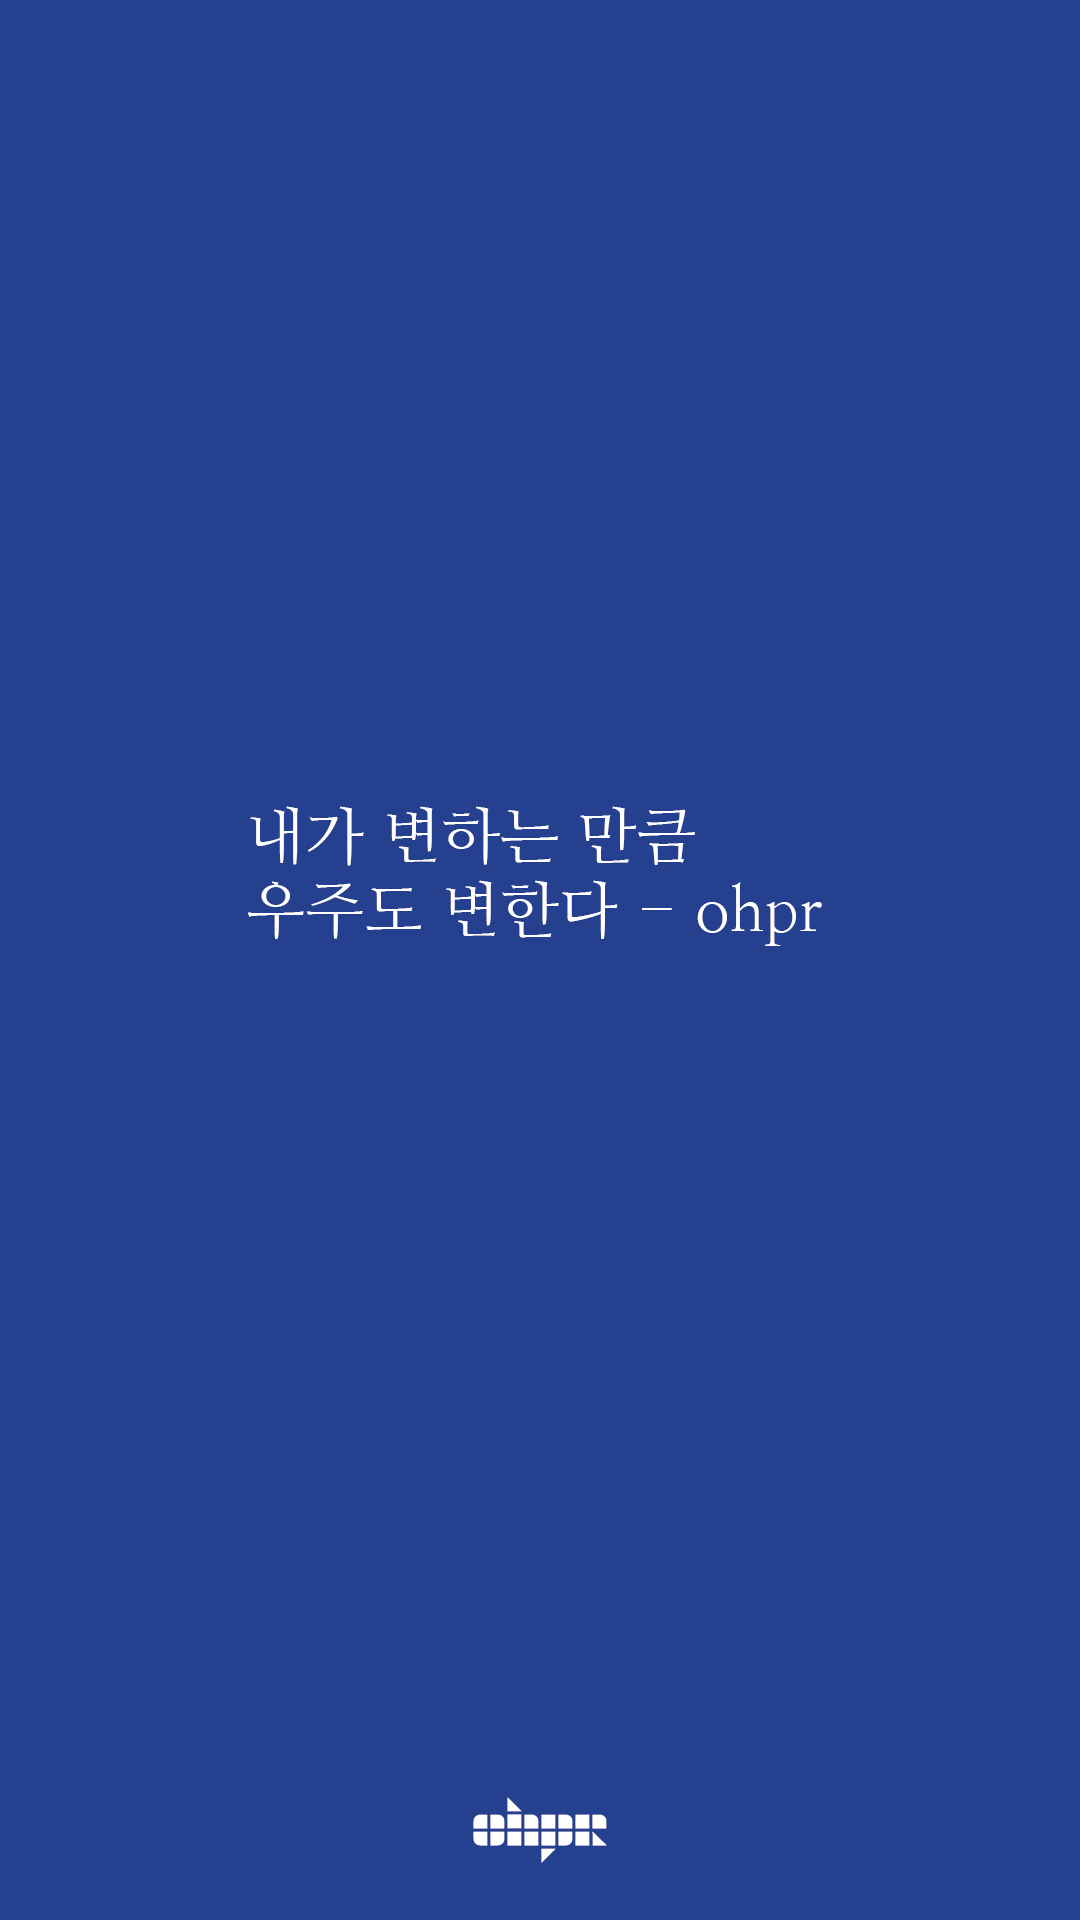 ohpr_wording2